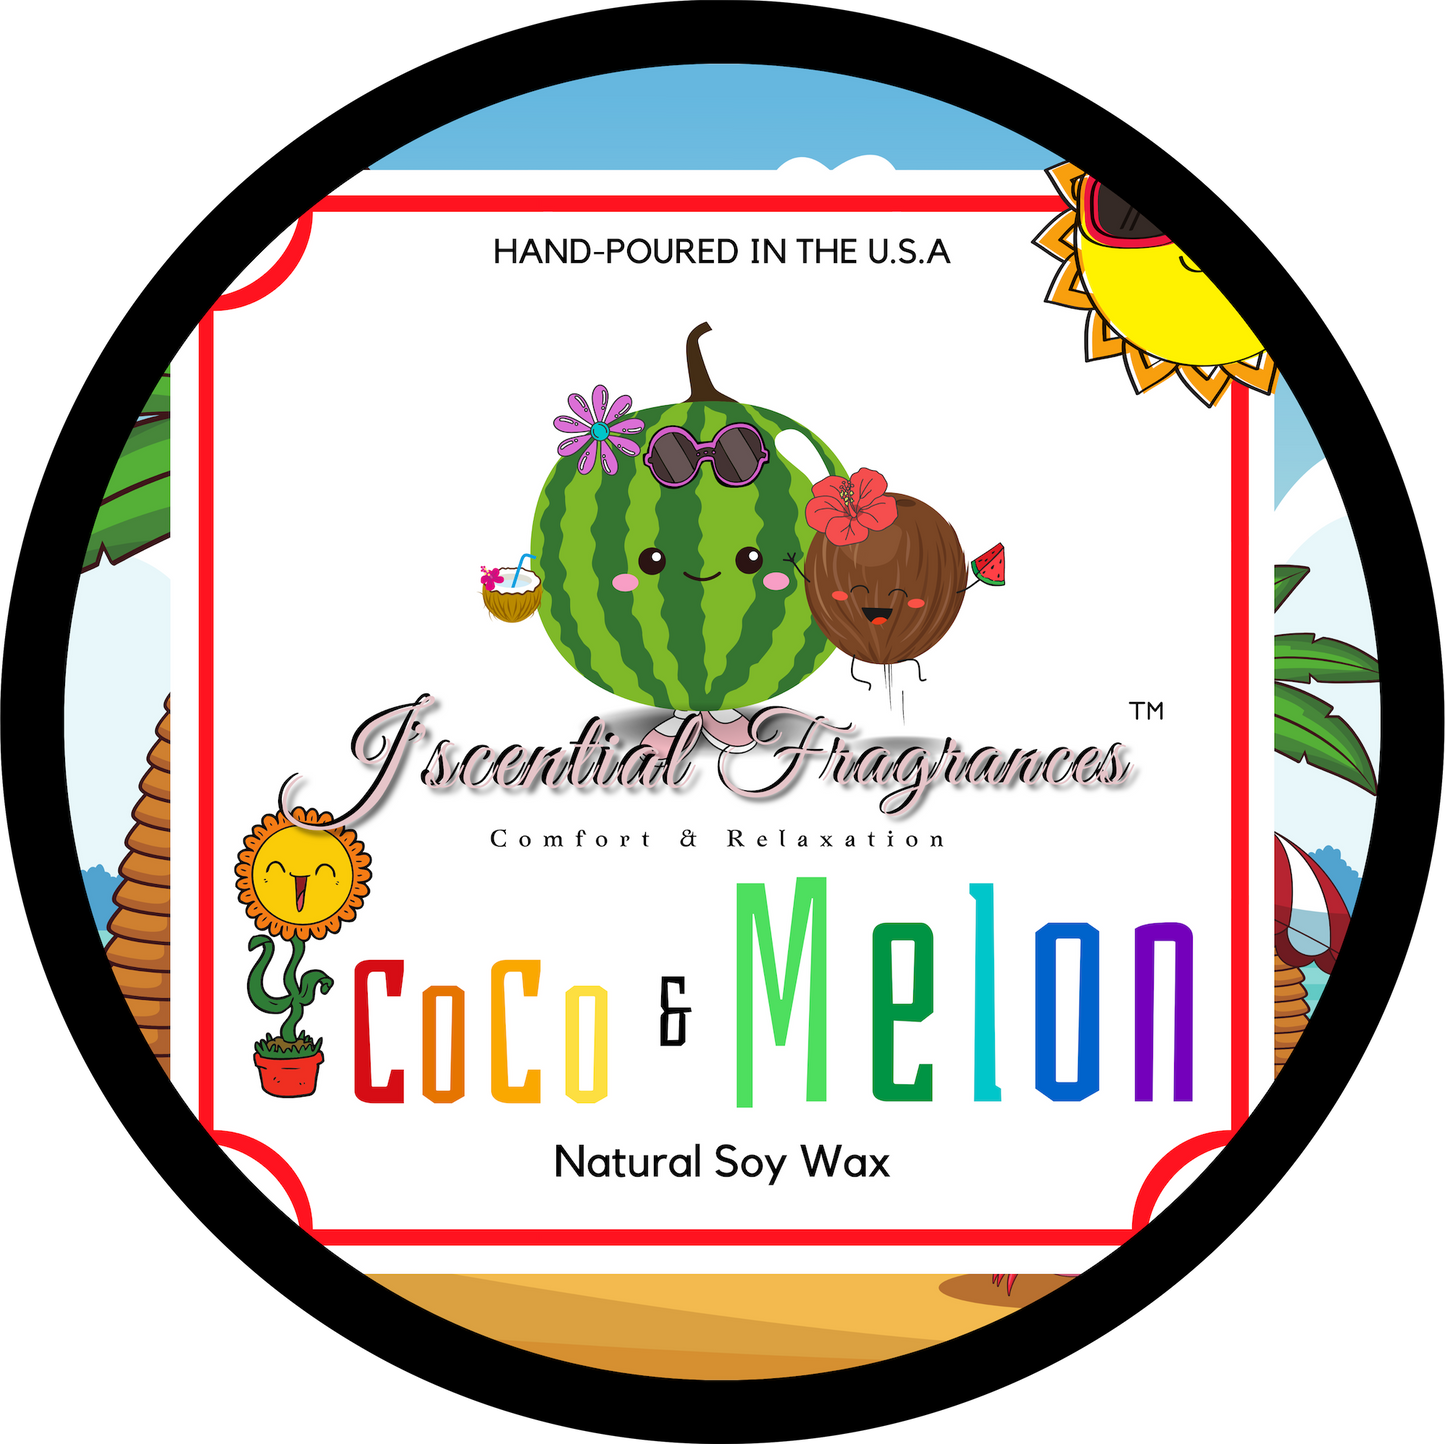 Coco & Melon (Candle-Tin)